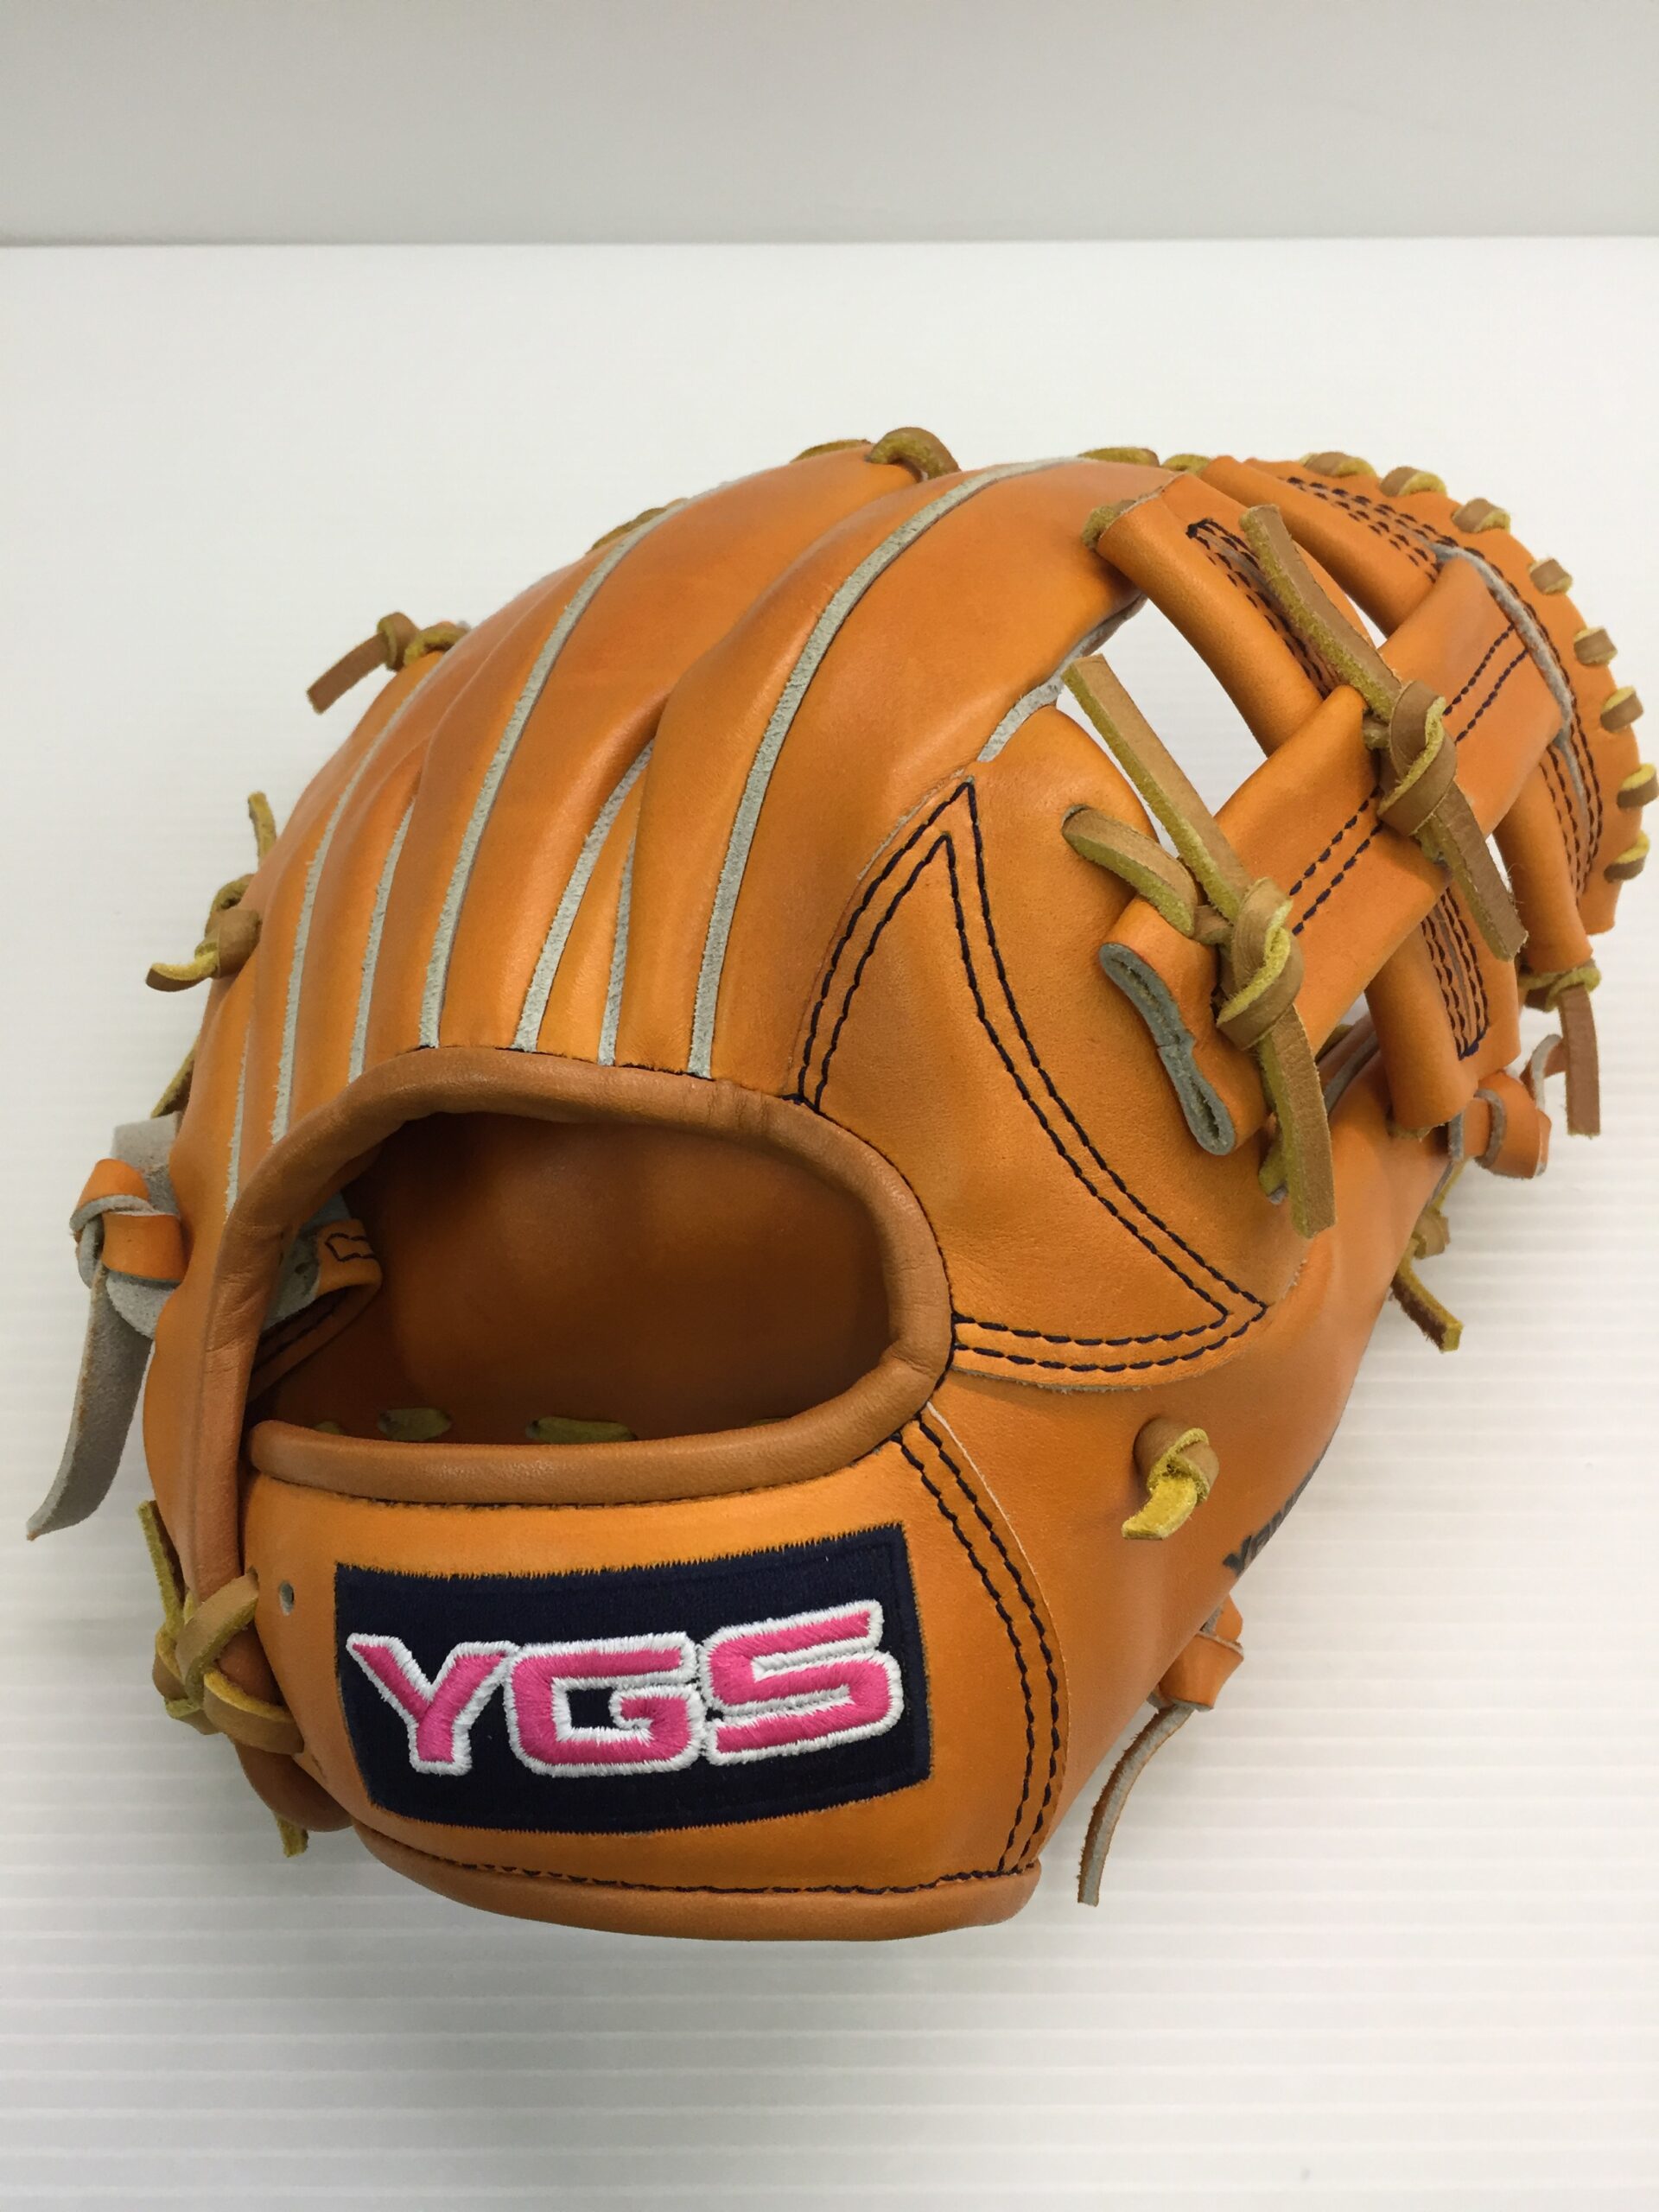 YGS 山本グラブスタジオ 軟式 内野手用 グローブ YI17 野球グローブ買取ならピンチヒッター/ 野球用品買取専門店